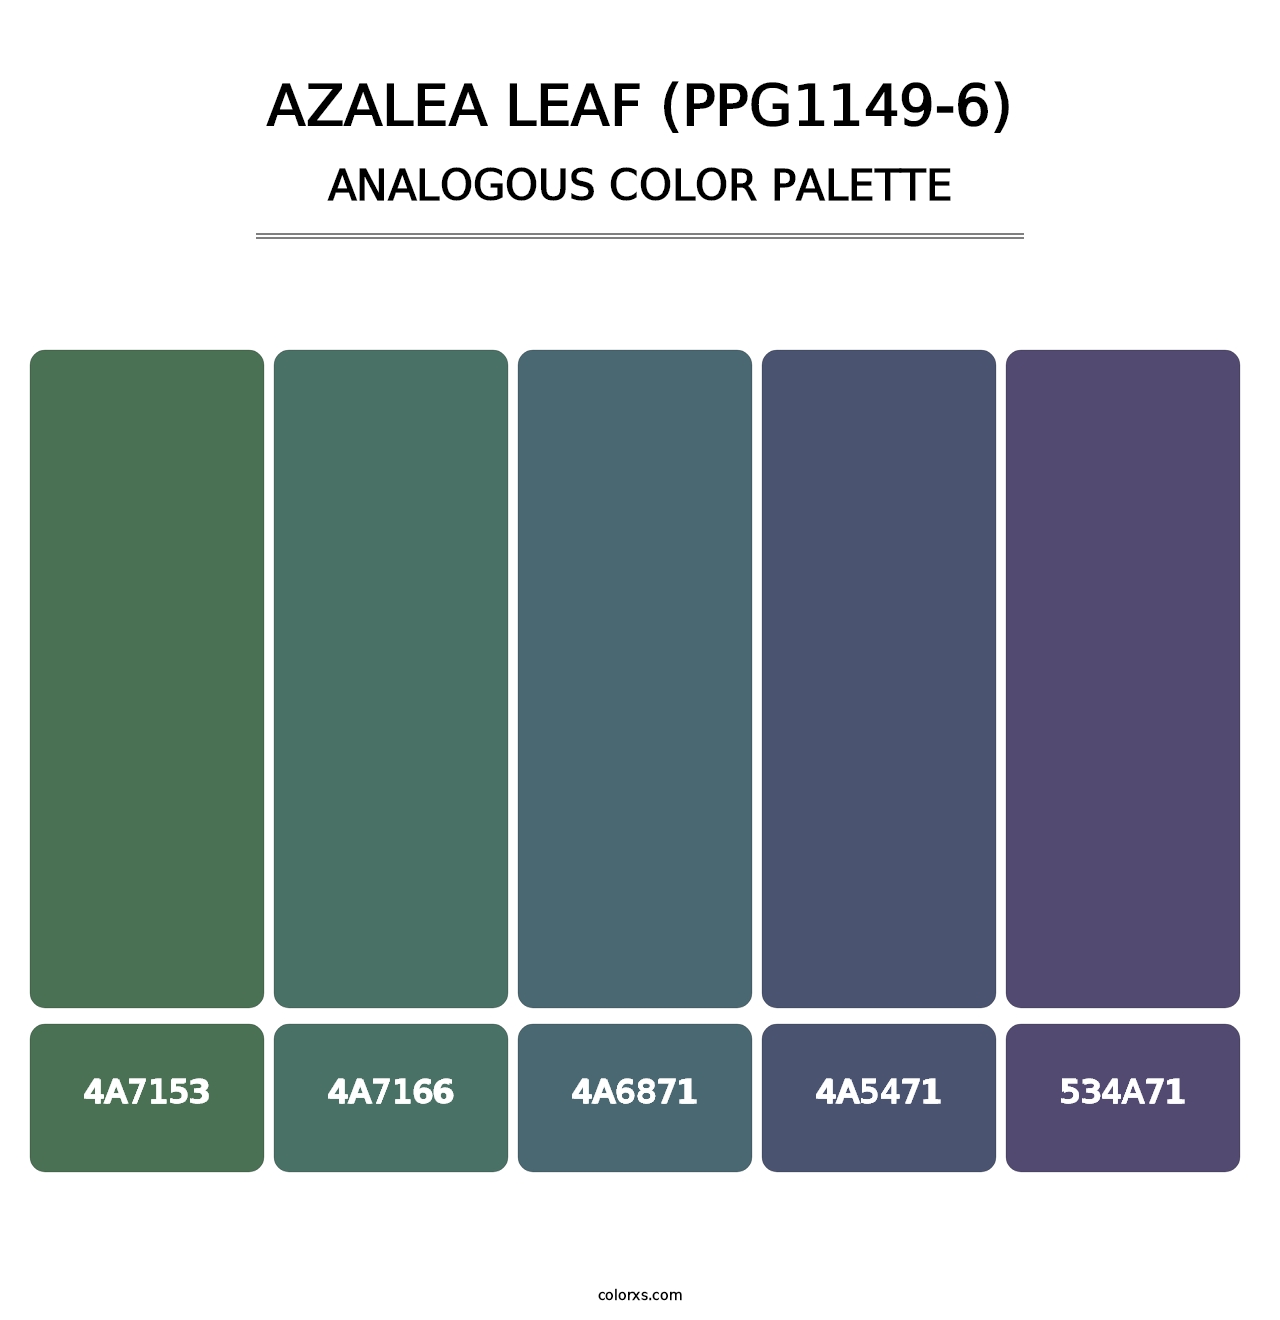 Azalea Leaf (PPG1149-6) - Analogous Color Palette